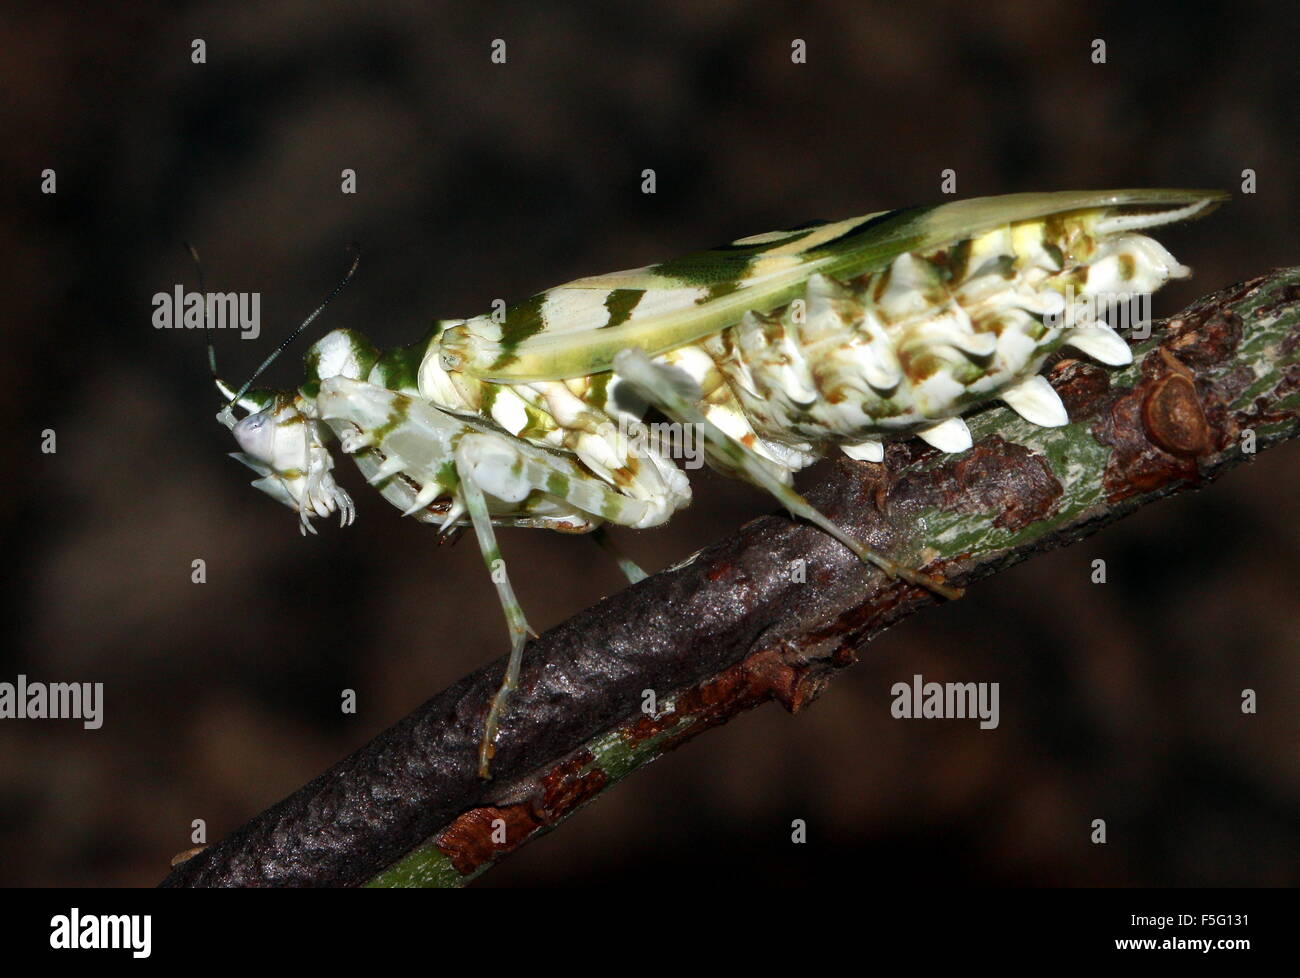 Africa orientale fiore spinoso mantis (Pseudocreobotra wahlbergi) visto di profilo Foto Stock